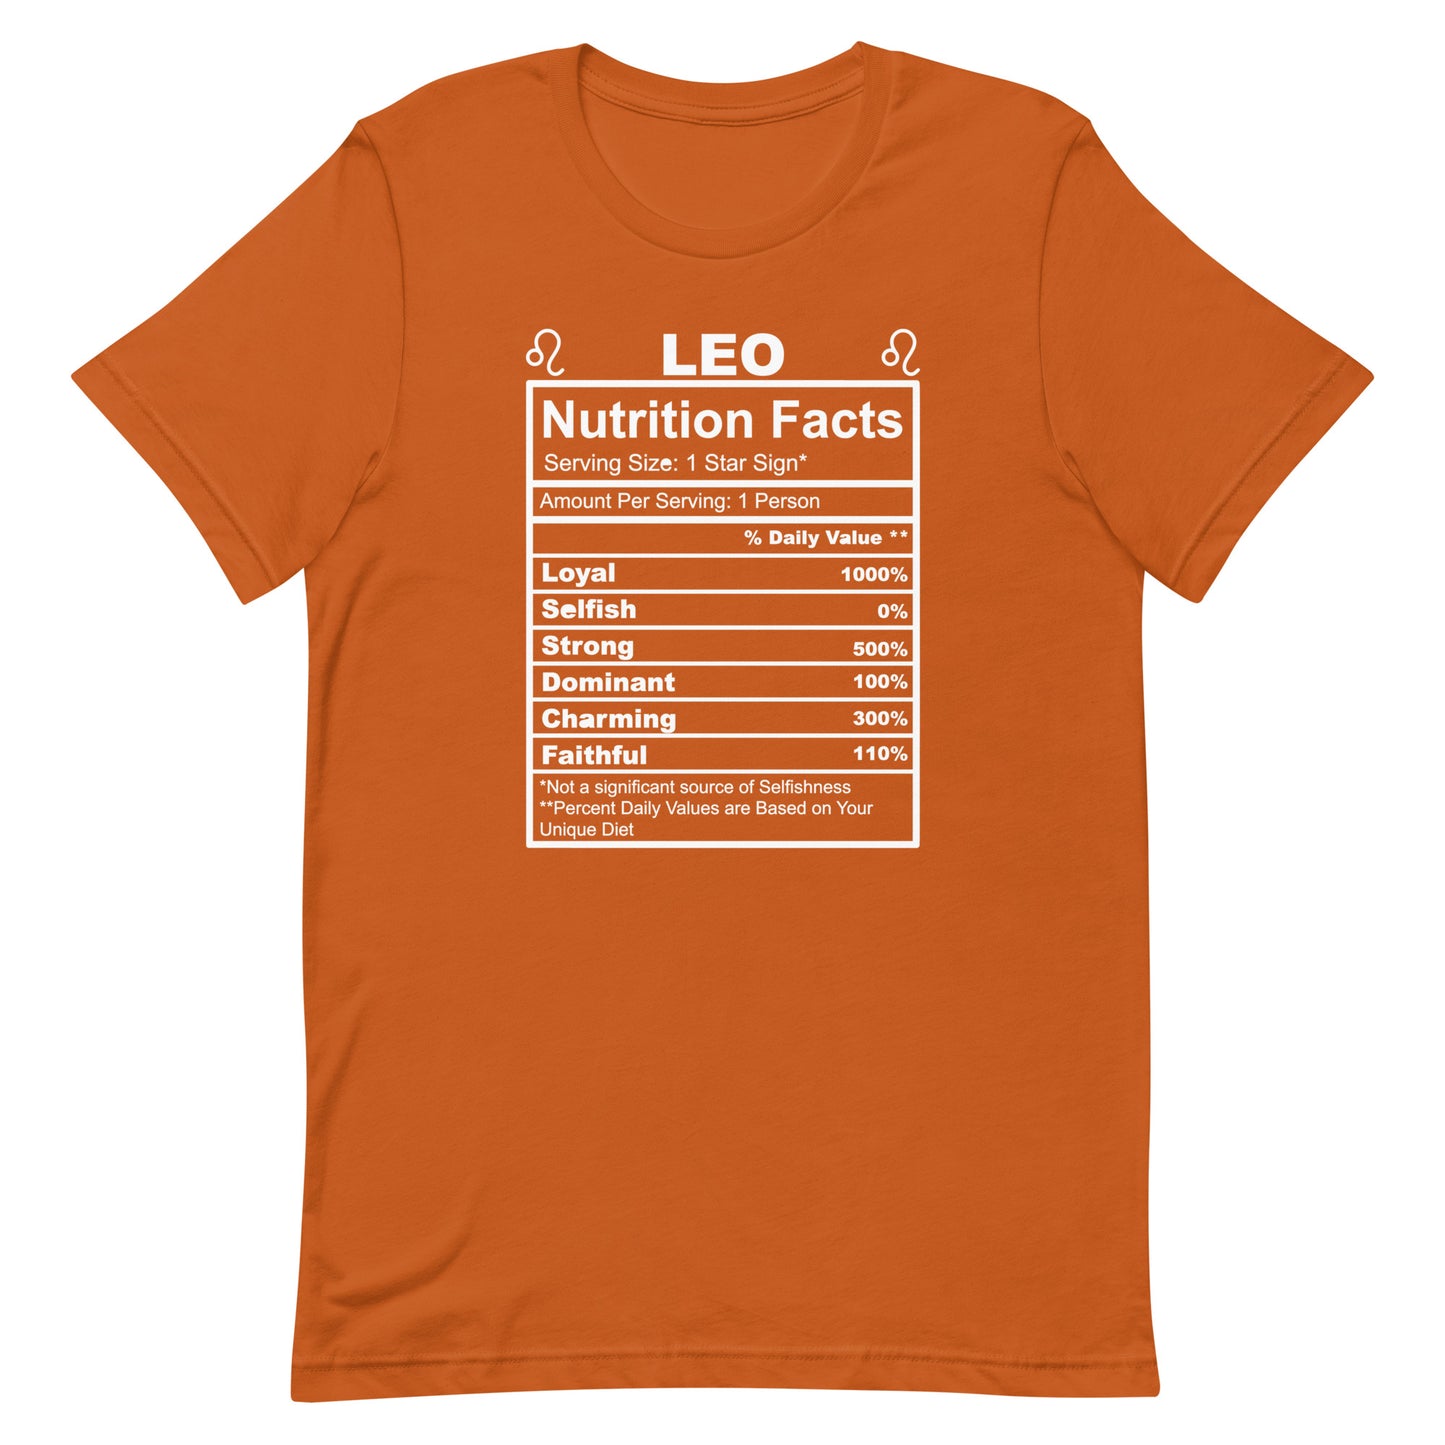 LEO - S-M - Unisex T-Shirt (whtie letters)